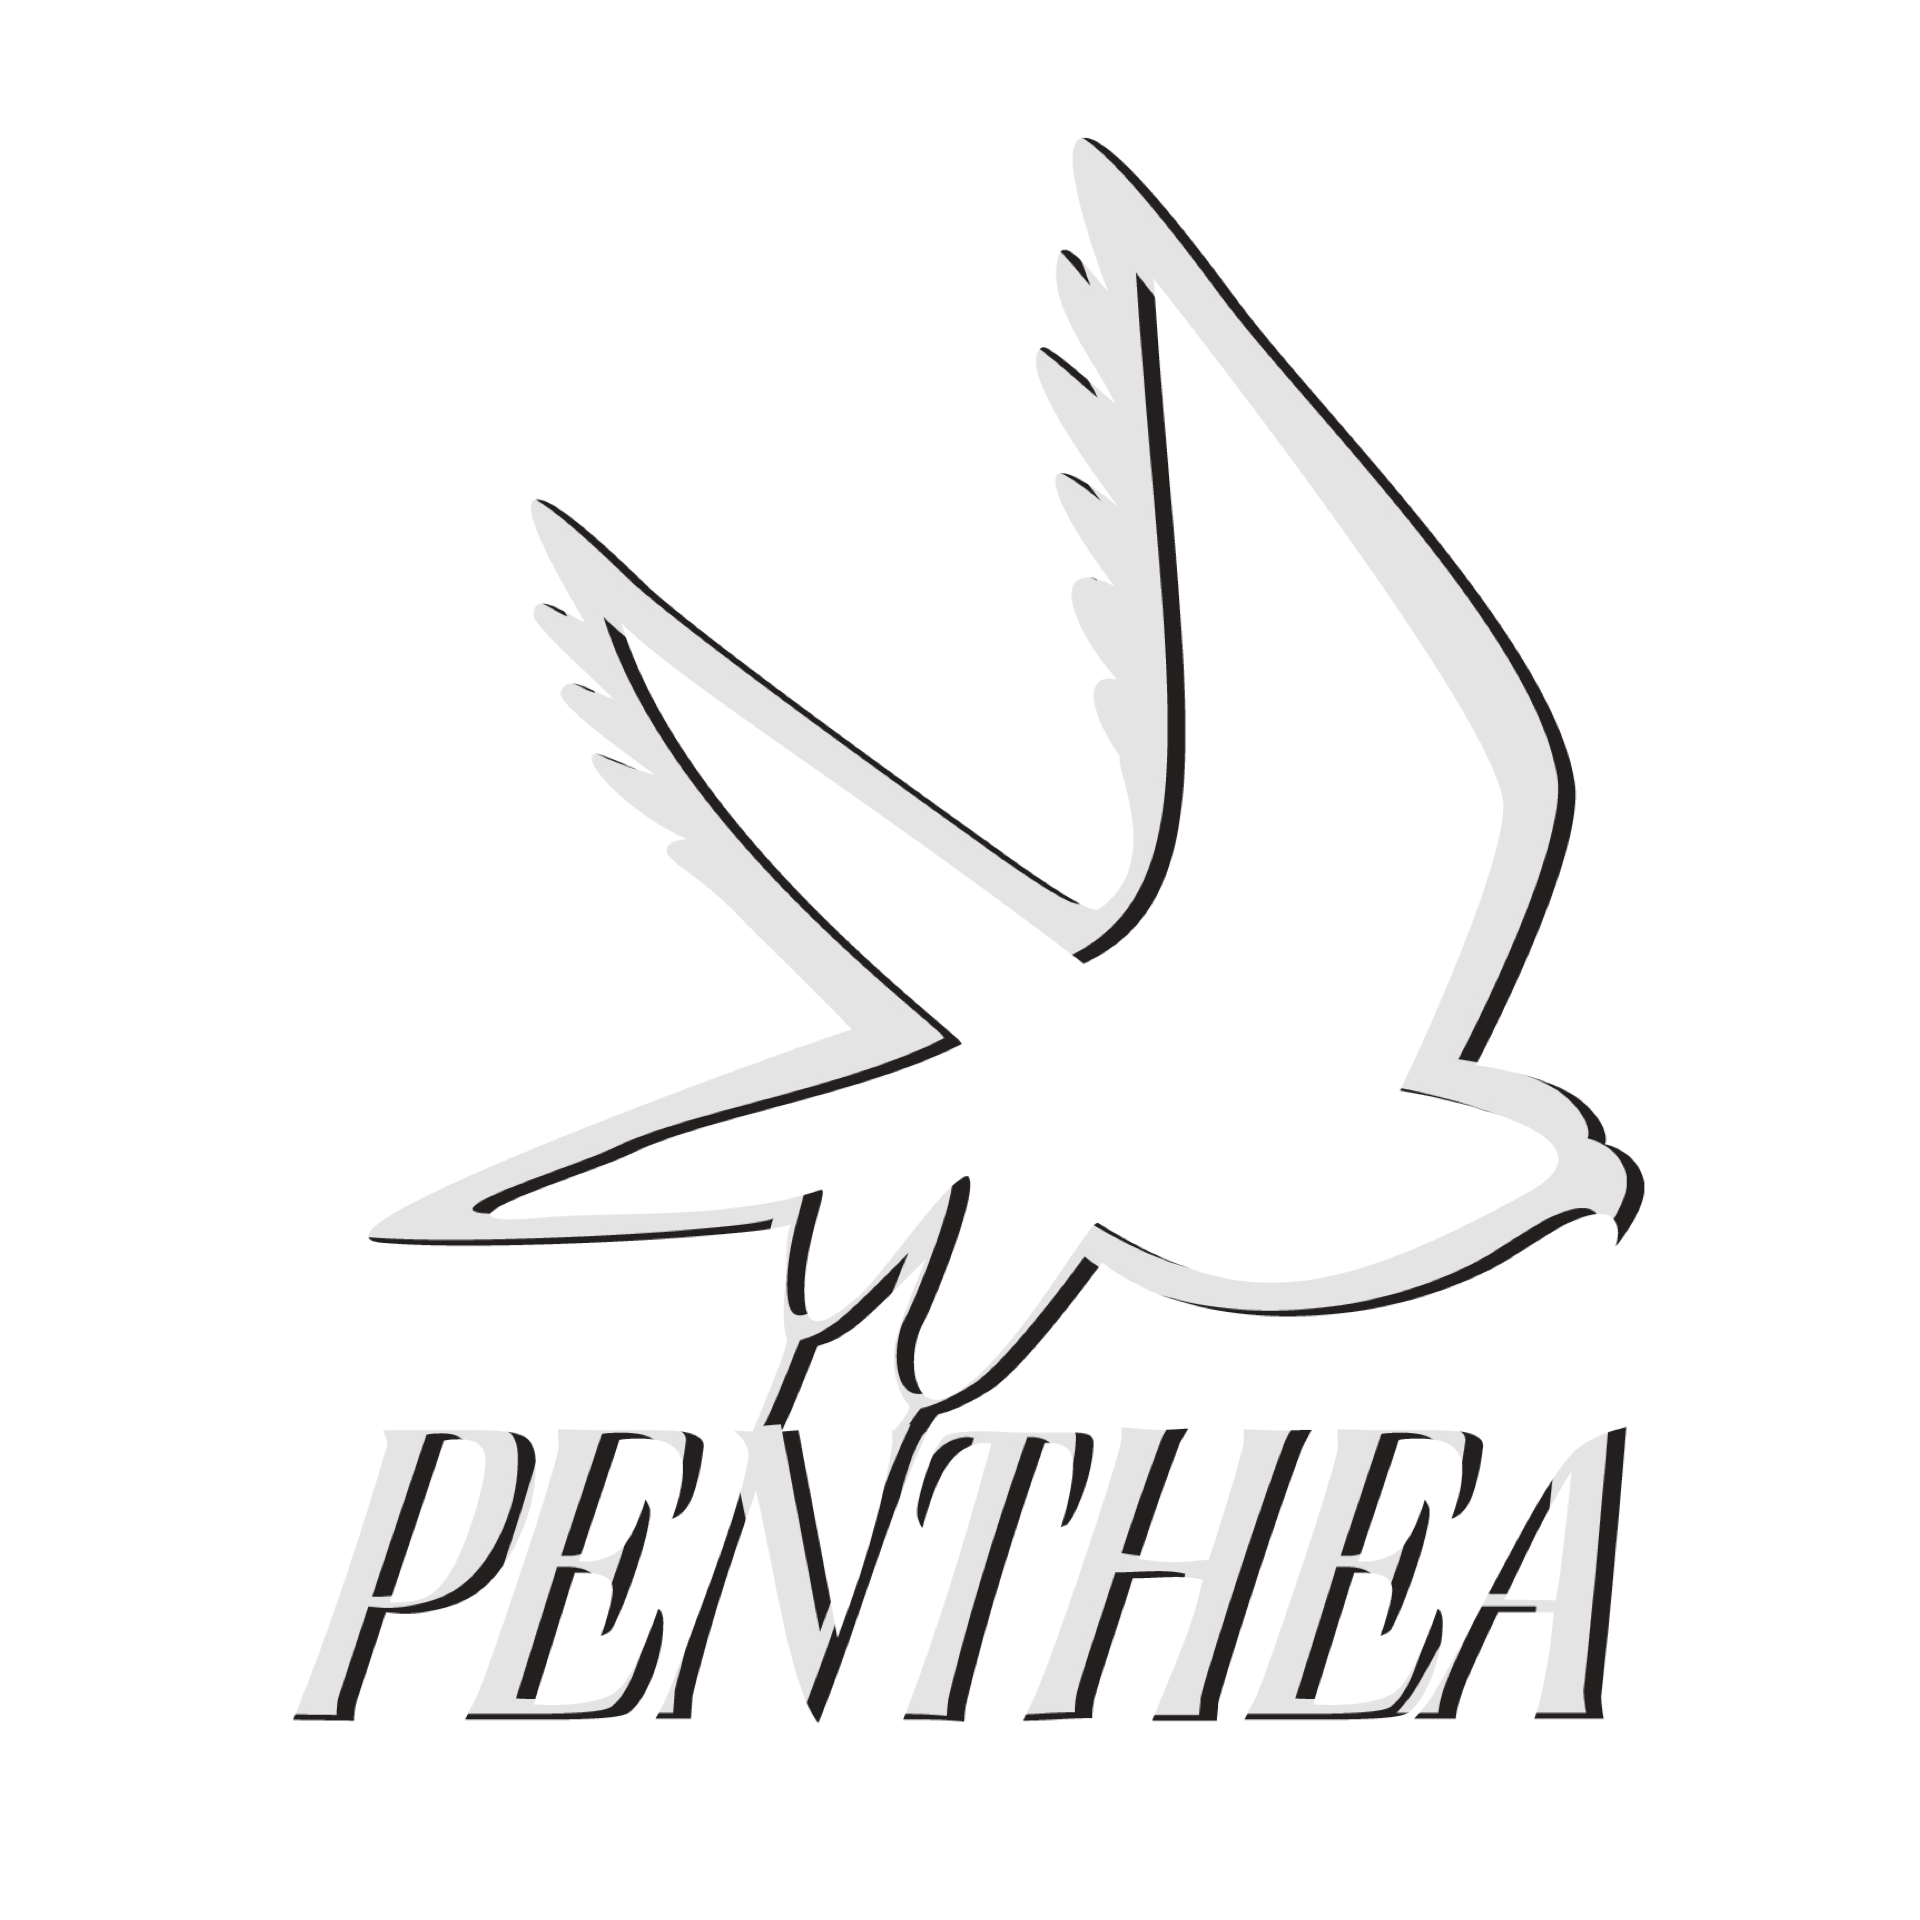 Penthea